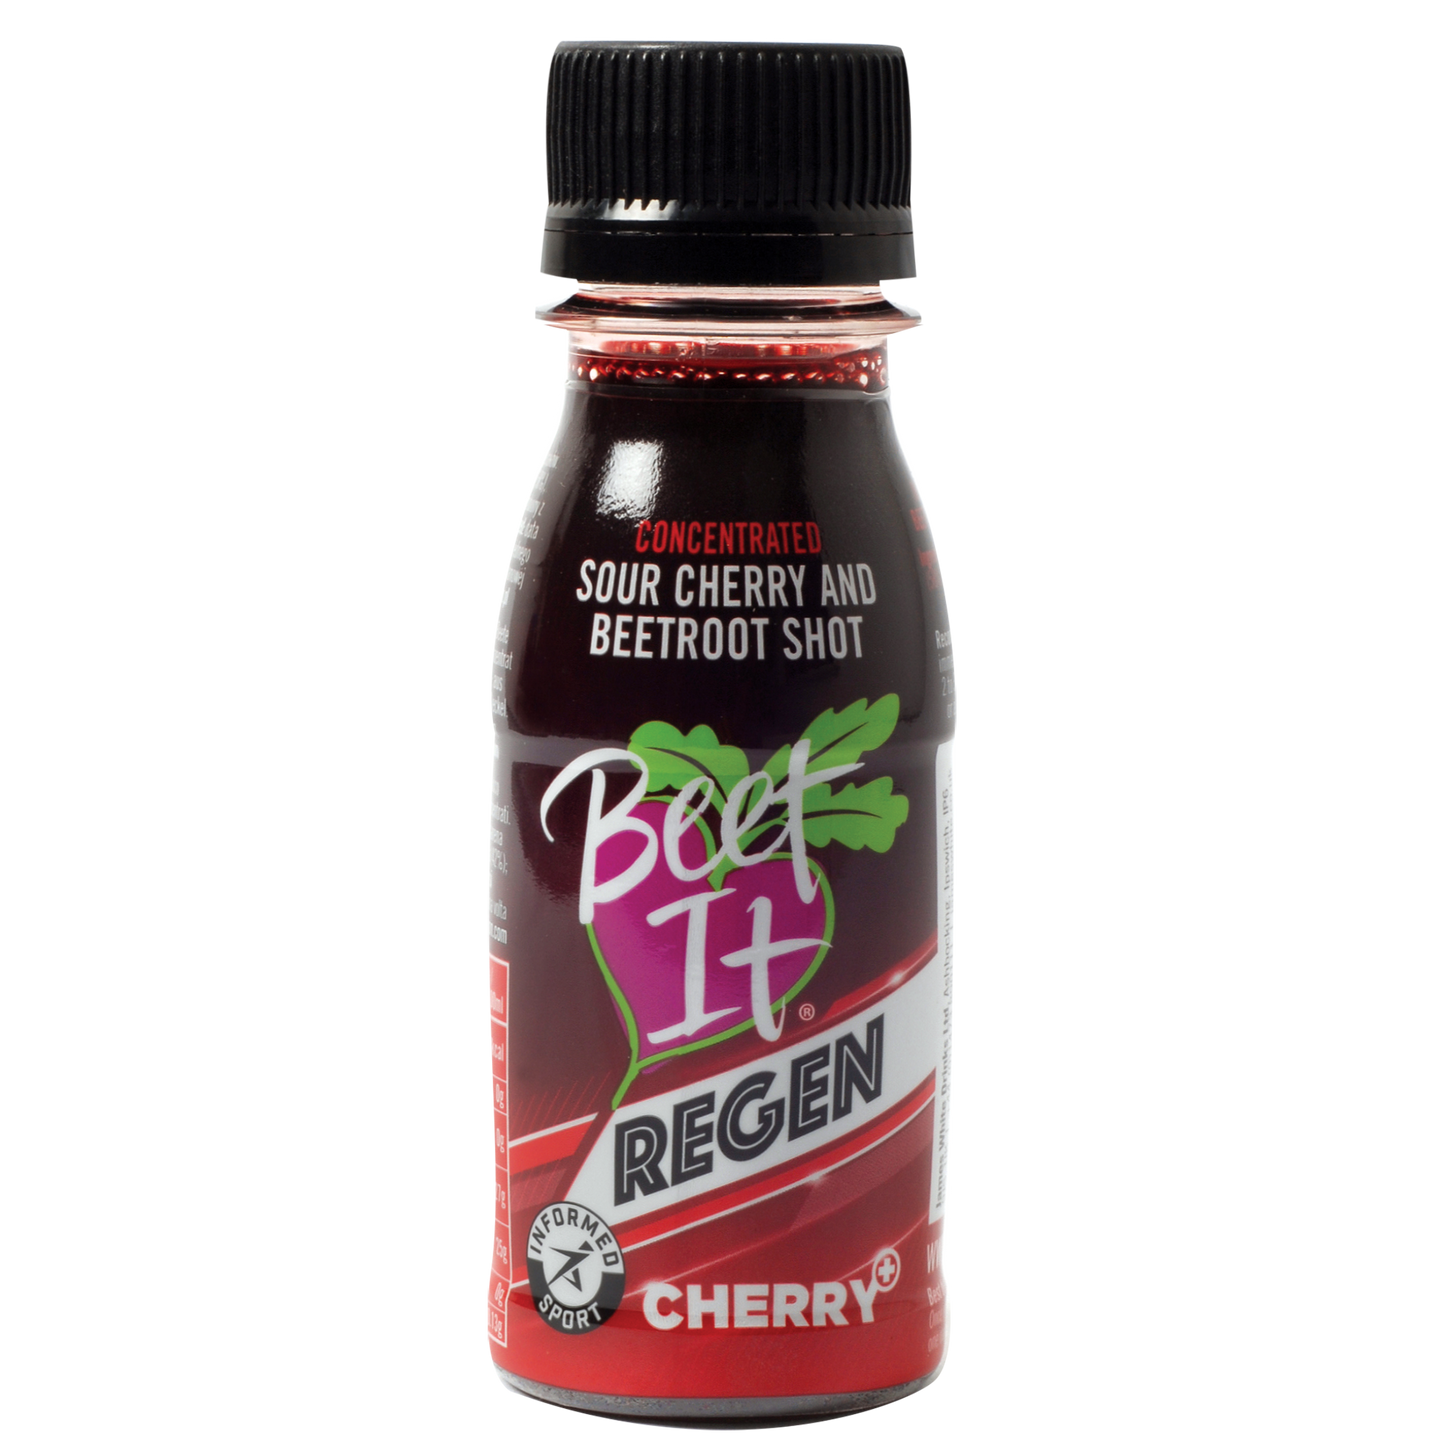 Beet It Regen Cherry+